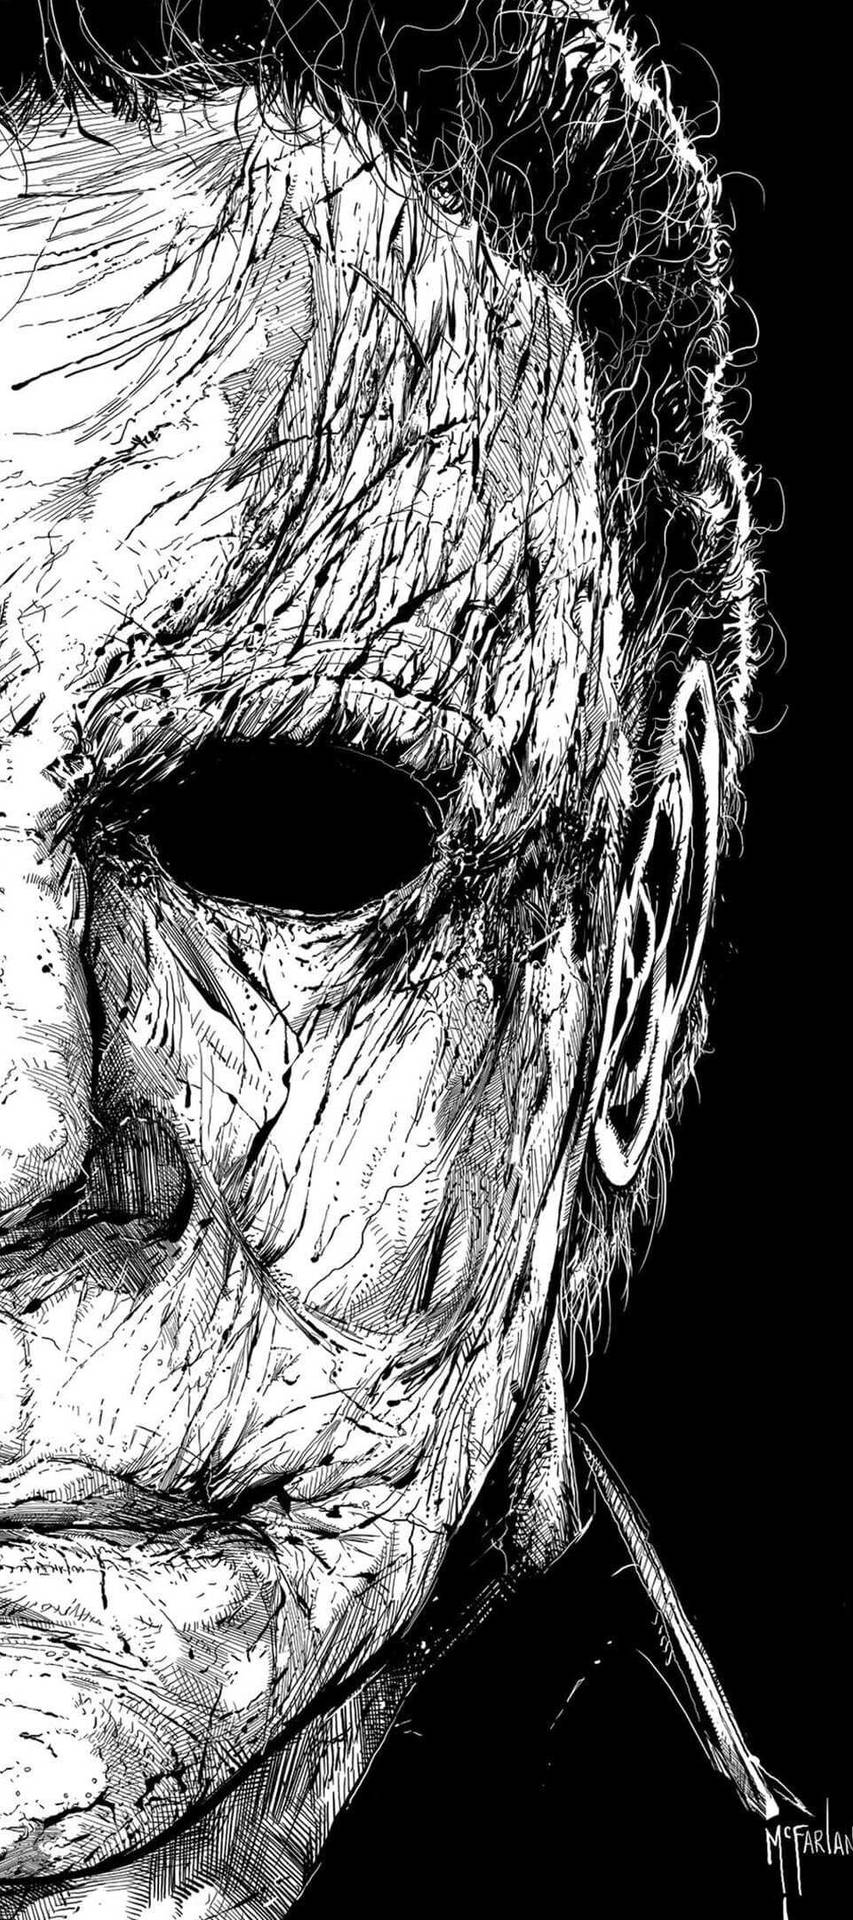 Ensvartvit Ritning Av En Halloweenmask Som Bakgrundsbild På Datorn Eller Mobilen. Wallpaper